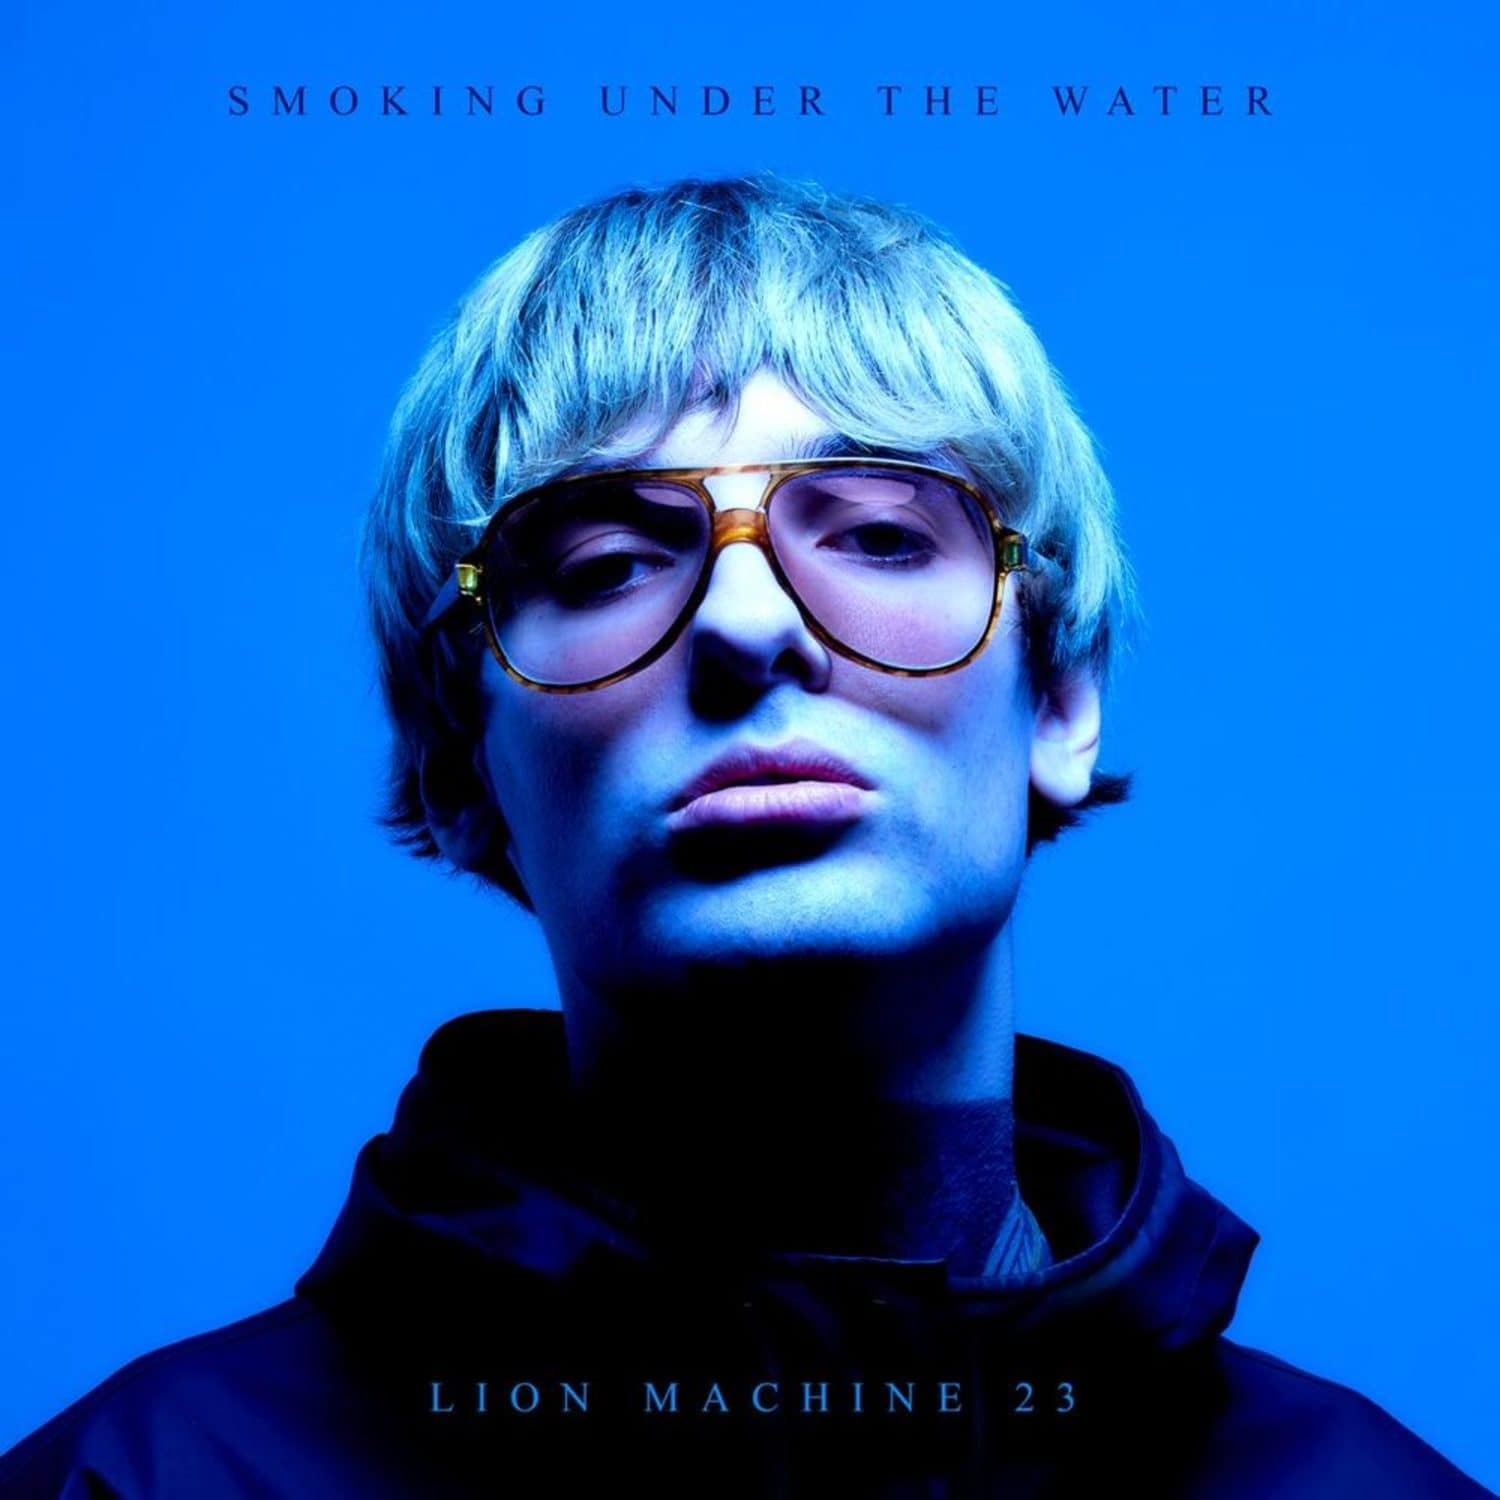 Lion Machine 23 - SMOKING UNDER THE WATER